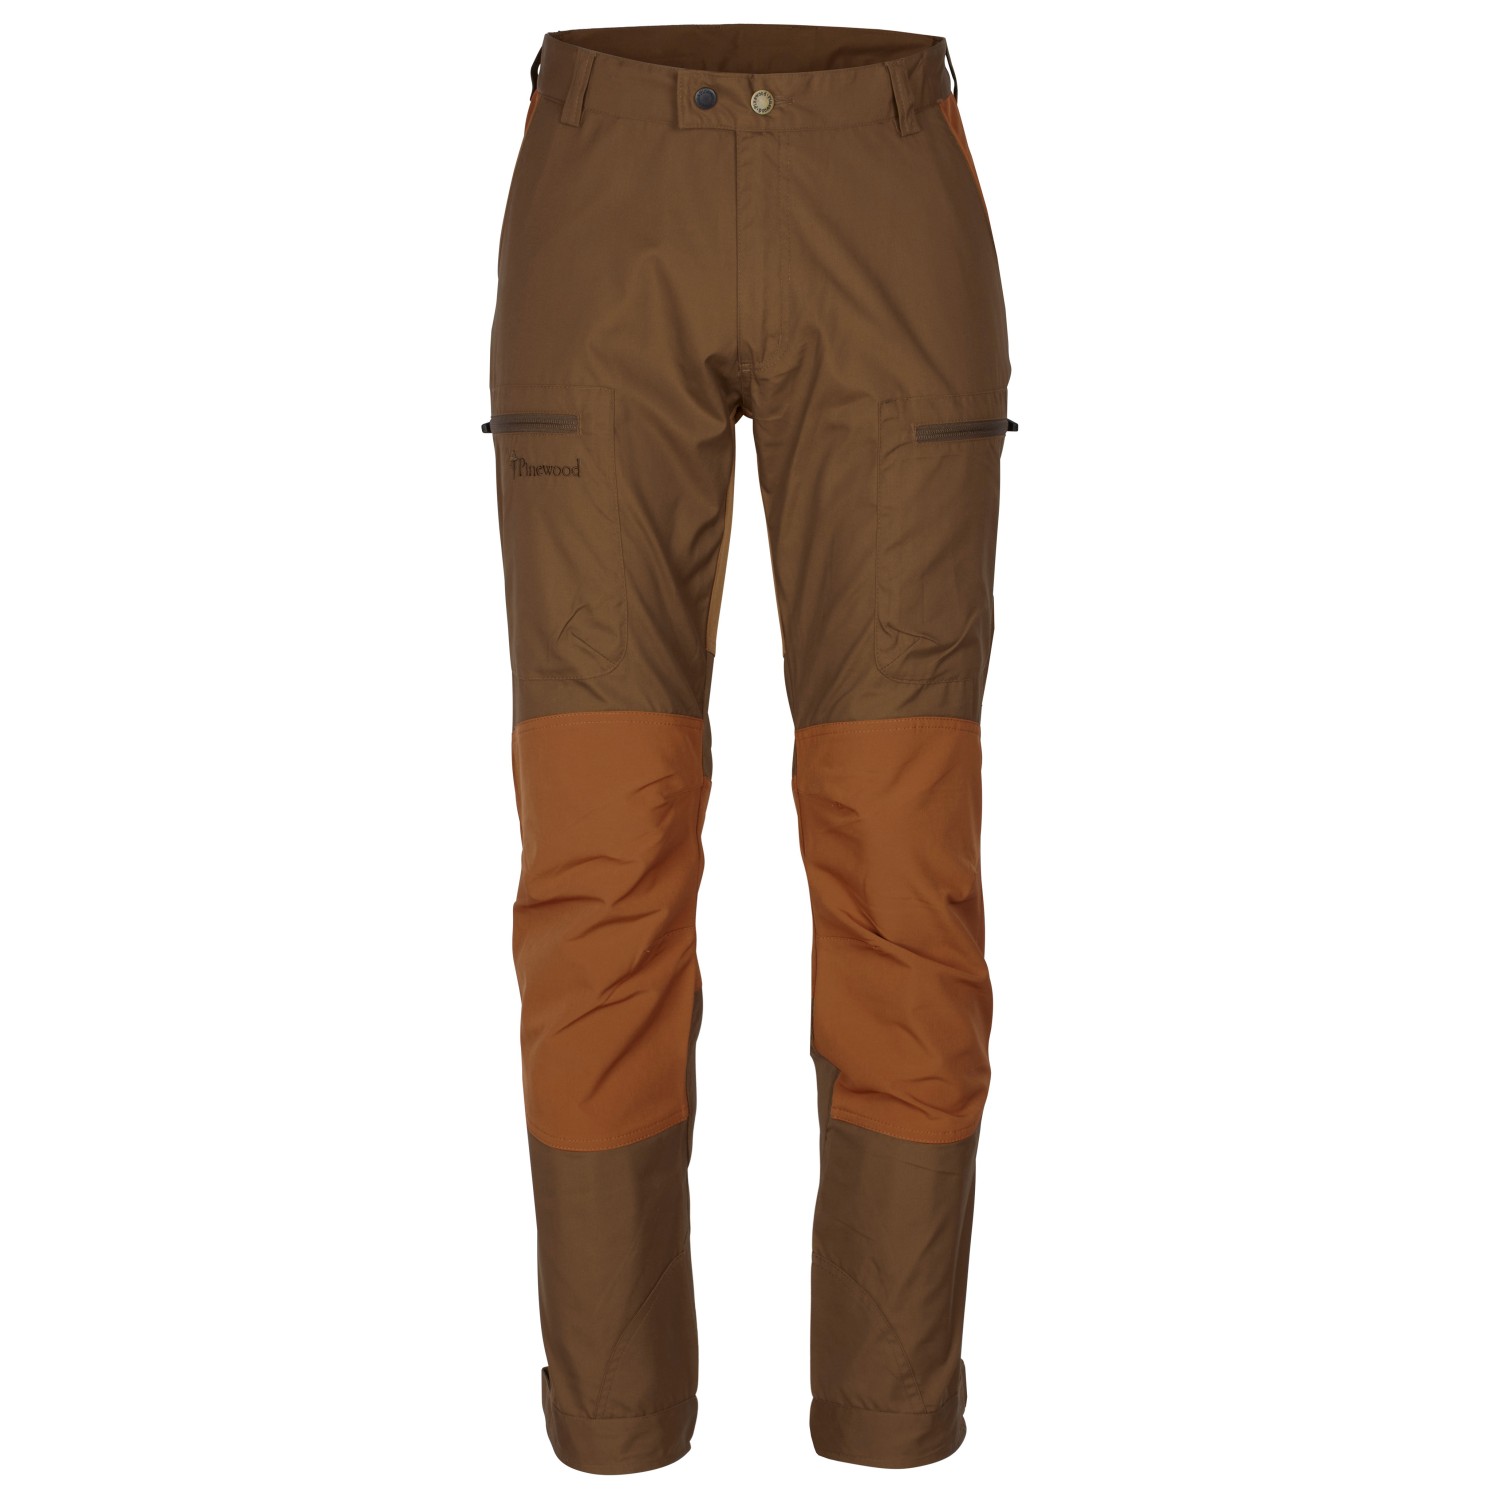 Трекинговые брюки Pinewood Caribou TC Hose, цвет Nougat/Fudge